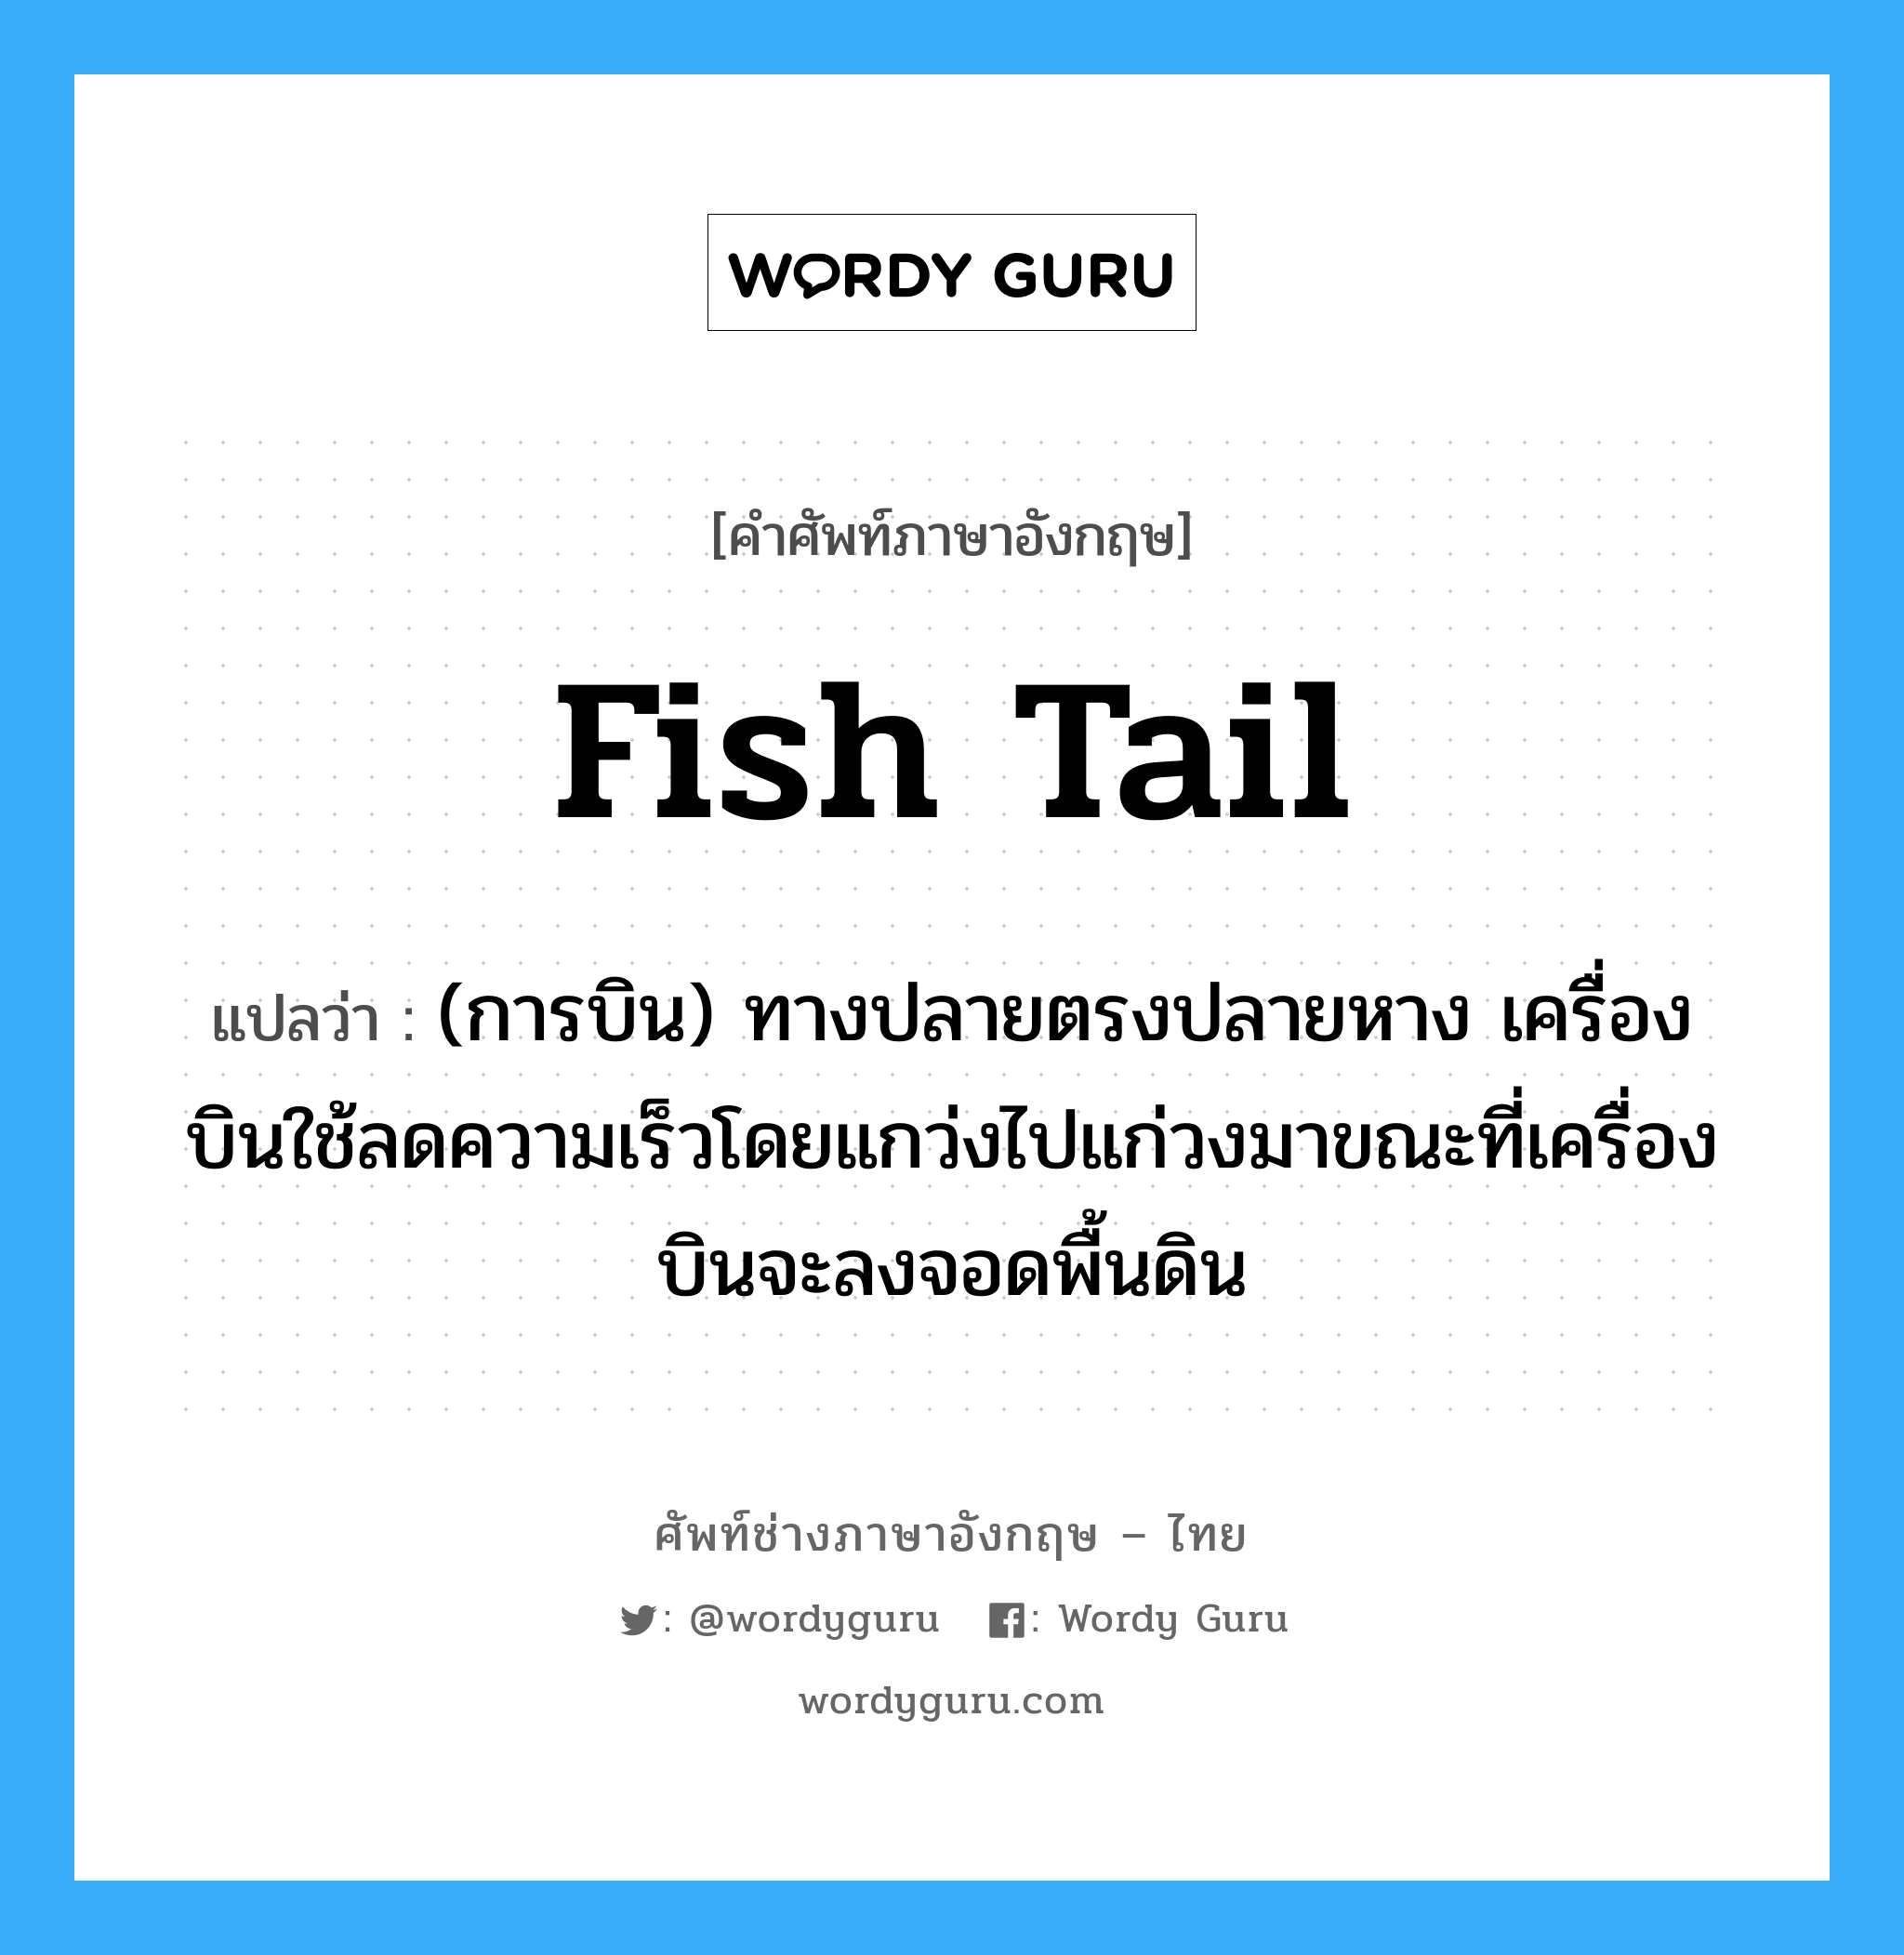 fish tail แปลว่า?, คำศัพท์ช่างภาษาอังกฤษ - ไทย fish tail คำศัพท์ภาษาอังกฤษ fish tail แปลว่า (การบิน) ทางปลายตรงปลายหาง เครื่องบินใช้ลดความเร็วโดยแกว่งไปแก่วงมาขณะที่เครื่องบินจะลงจอดพื้นดิน